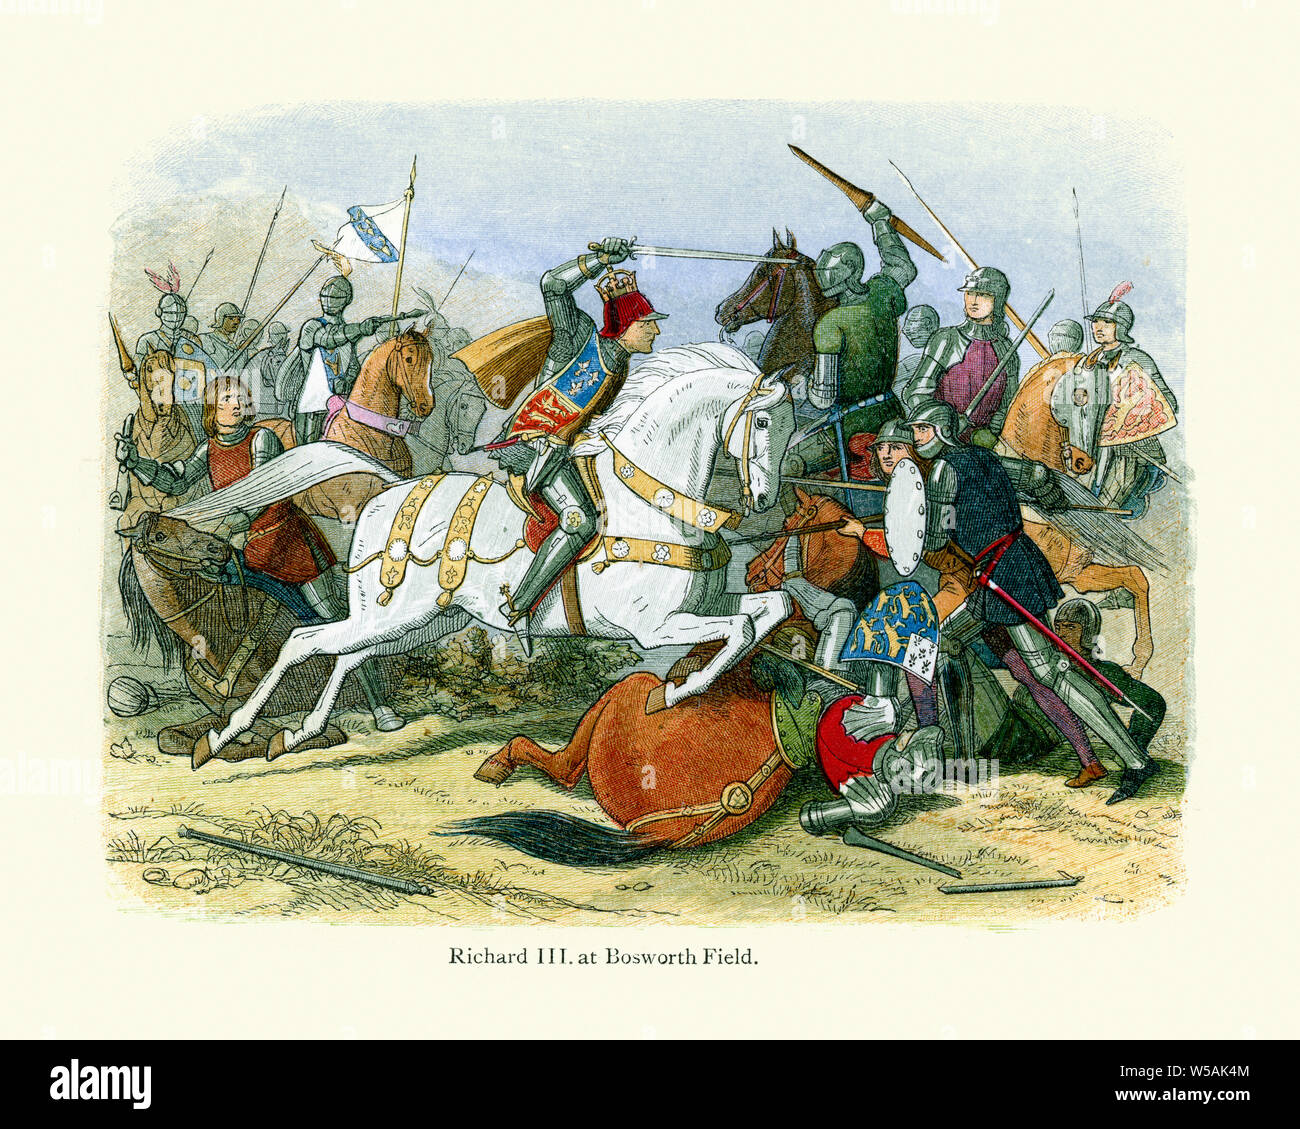 König Richard III. kämpft in der Schlacht von Bosworth in 1485. Schlacht von Bosworth war der vorletzte Schlacht von die Kriege der Rosen, der Bürgerkrieg. Stockfoto